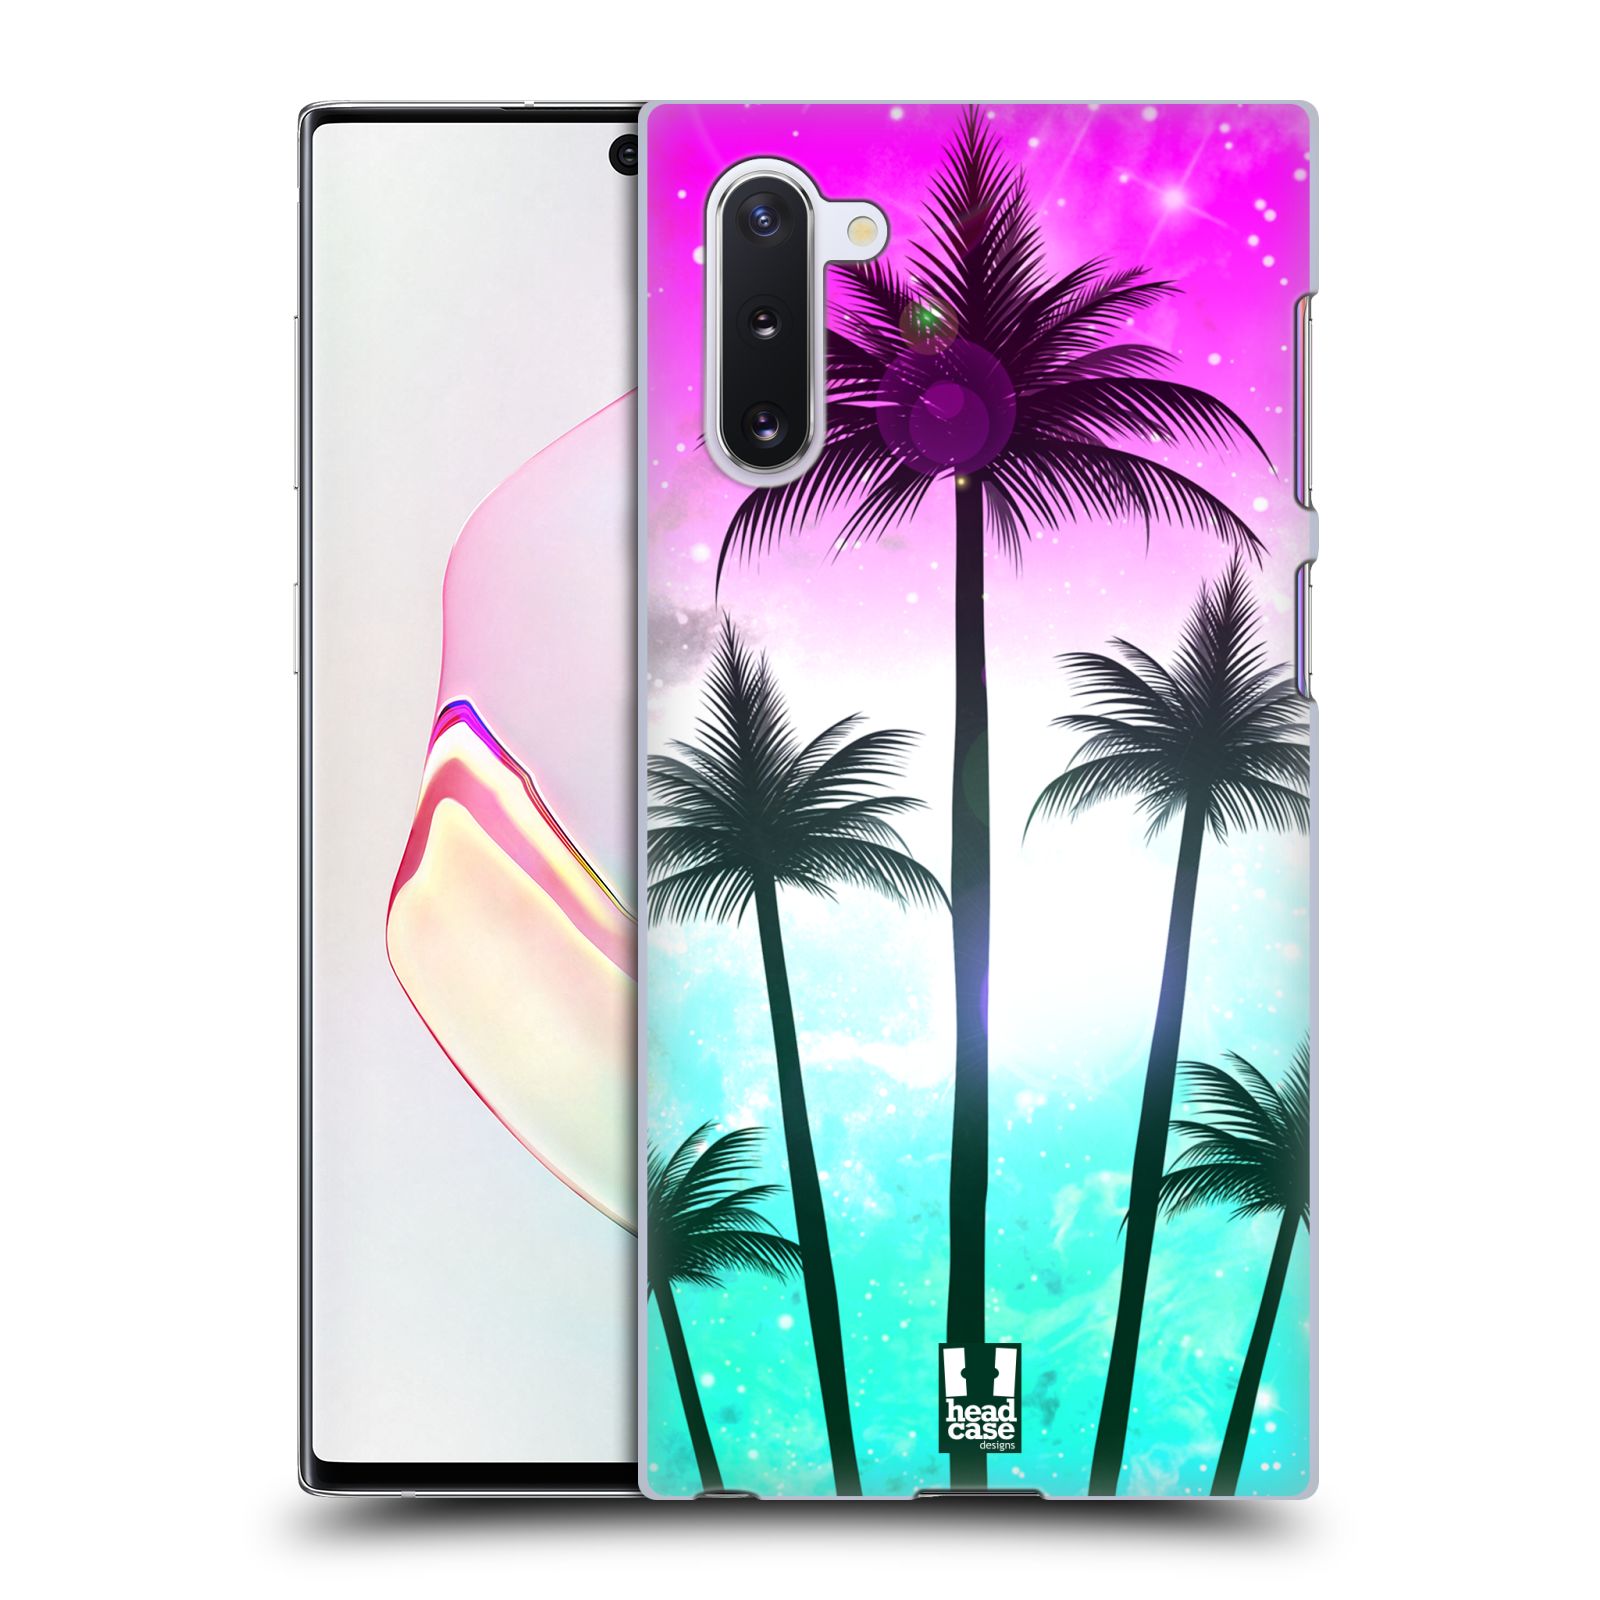 Pouzdro na mobil Samsung Galaxy Note 10 - HEAD CASE - vzor Kreslený motiv silueta moře a palmy RŮŽOVÁ A TYRKYS